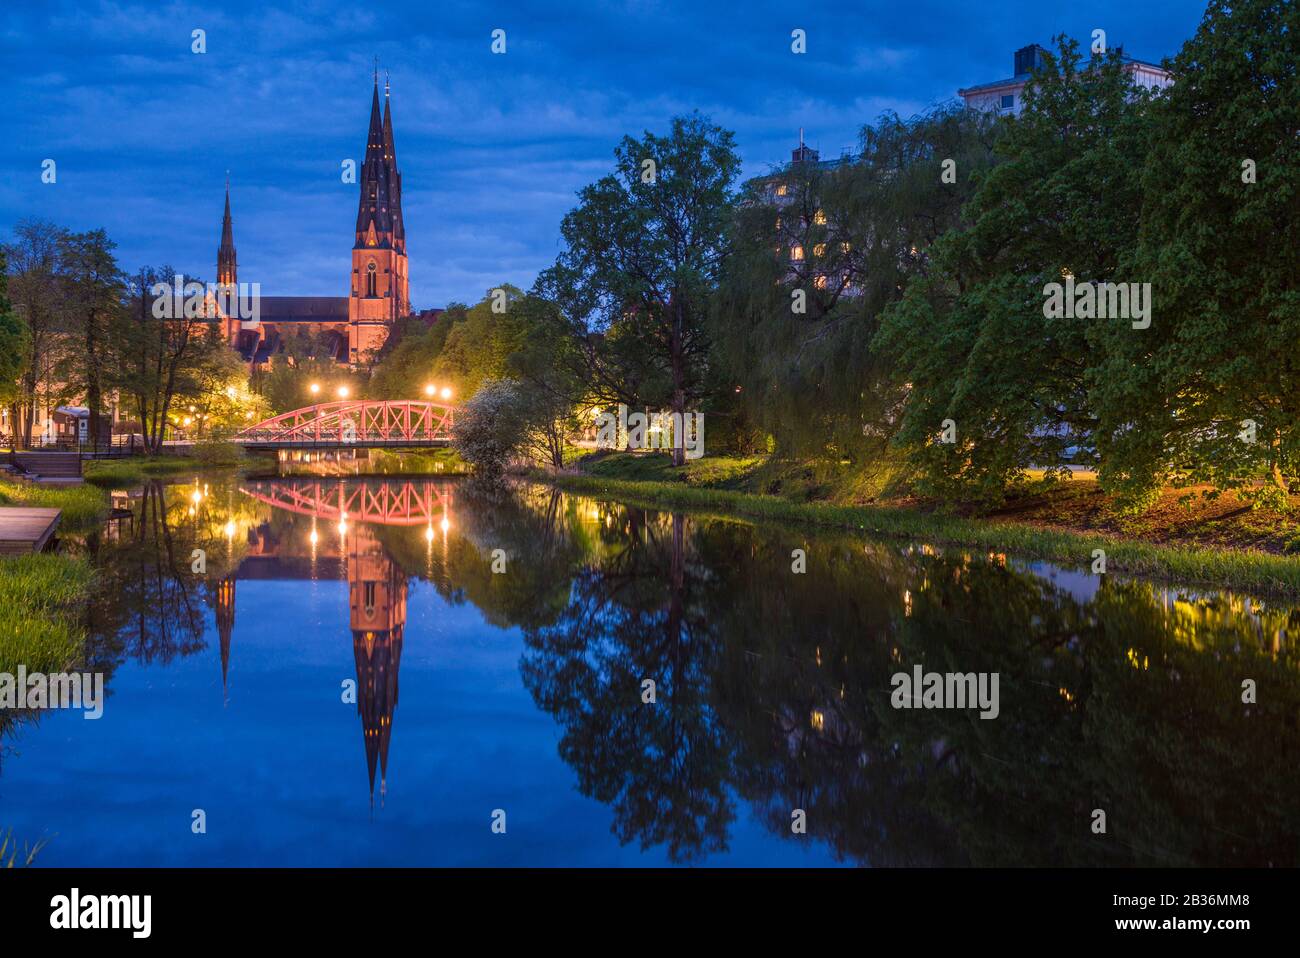 Sweden, Central Sweden, Uppsala, Domkyrka Cathedral, reflection, dusk Stock Photo